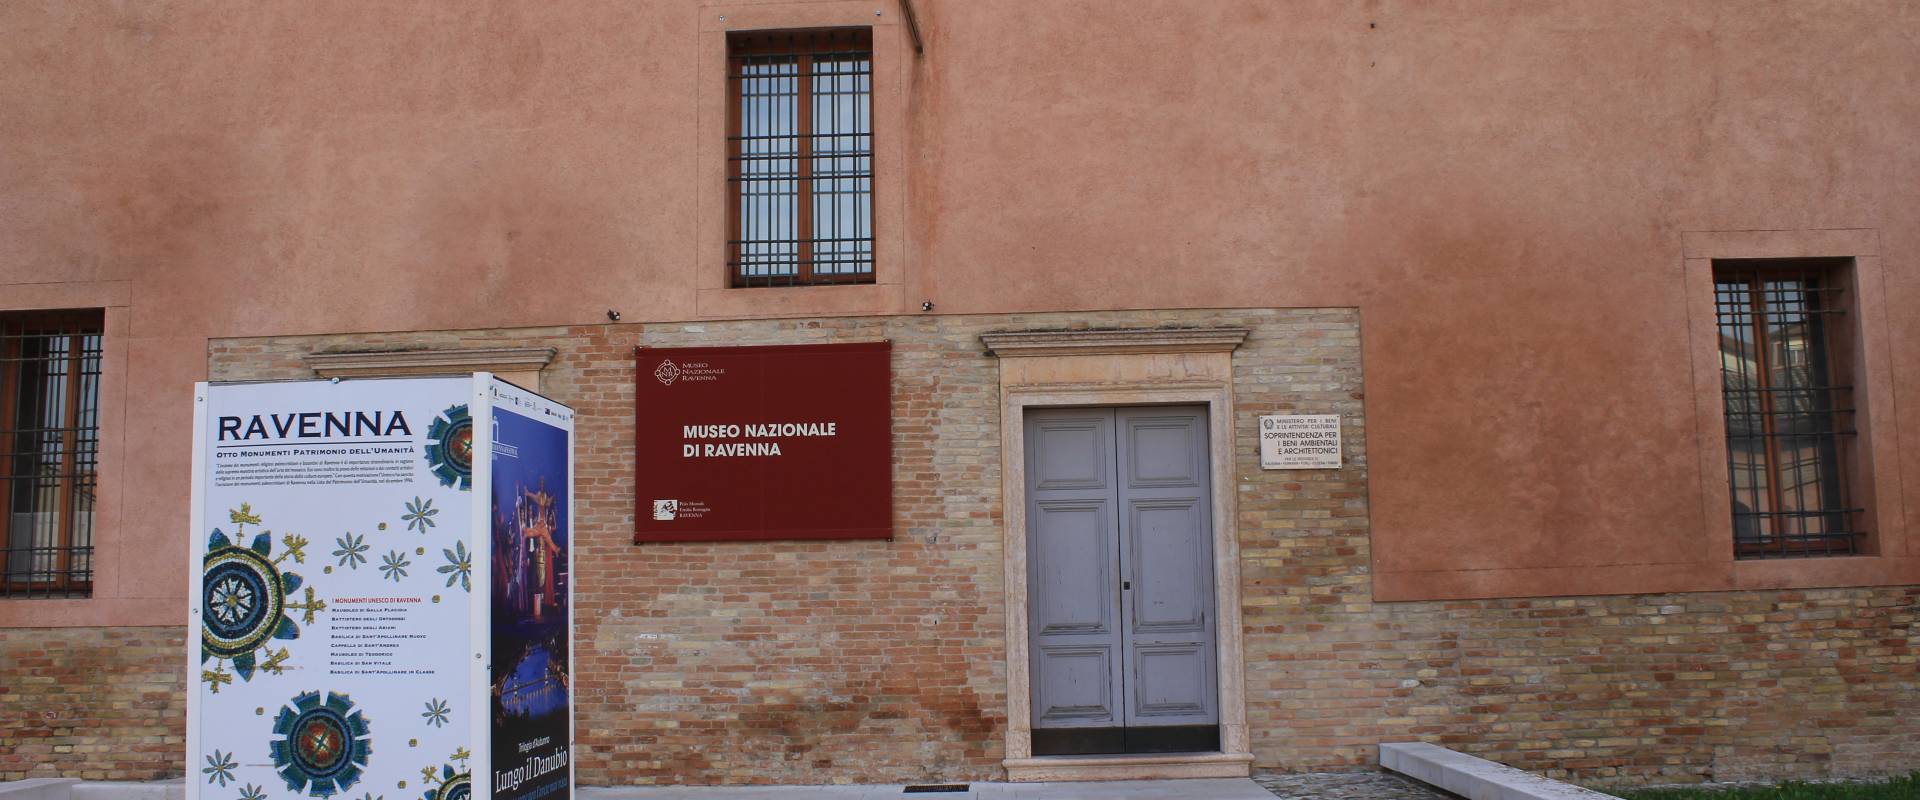 Museo Nazionale Ravenna 2 foto di Chiara Dobro